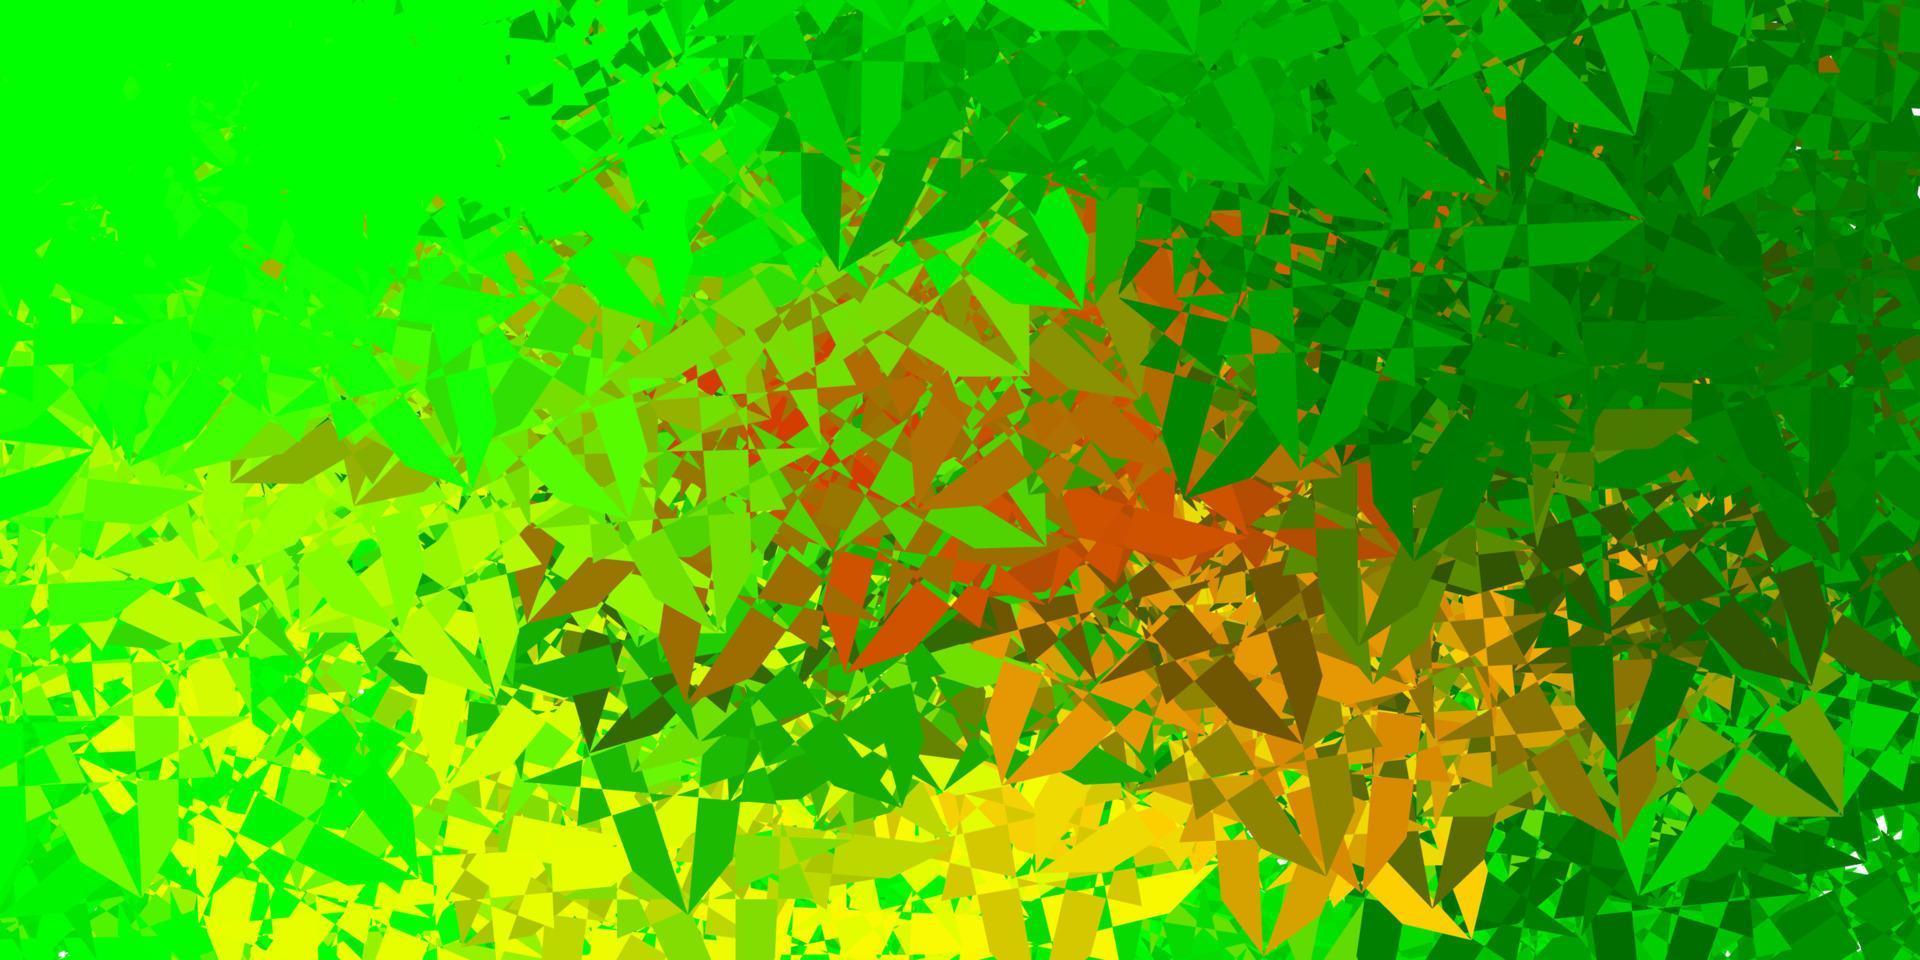 ljusgrön, gul vektormall med triangelformer. vektor